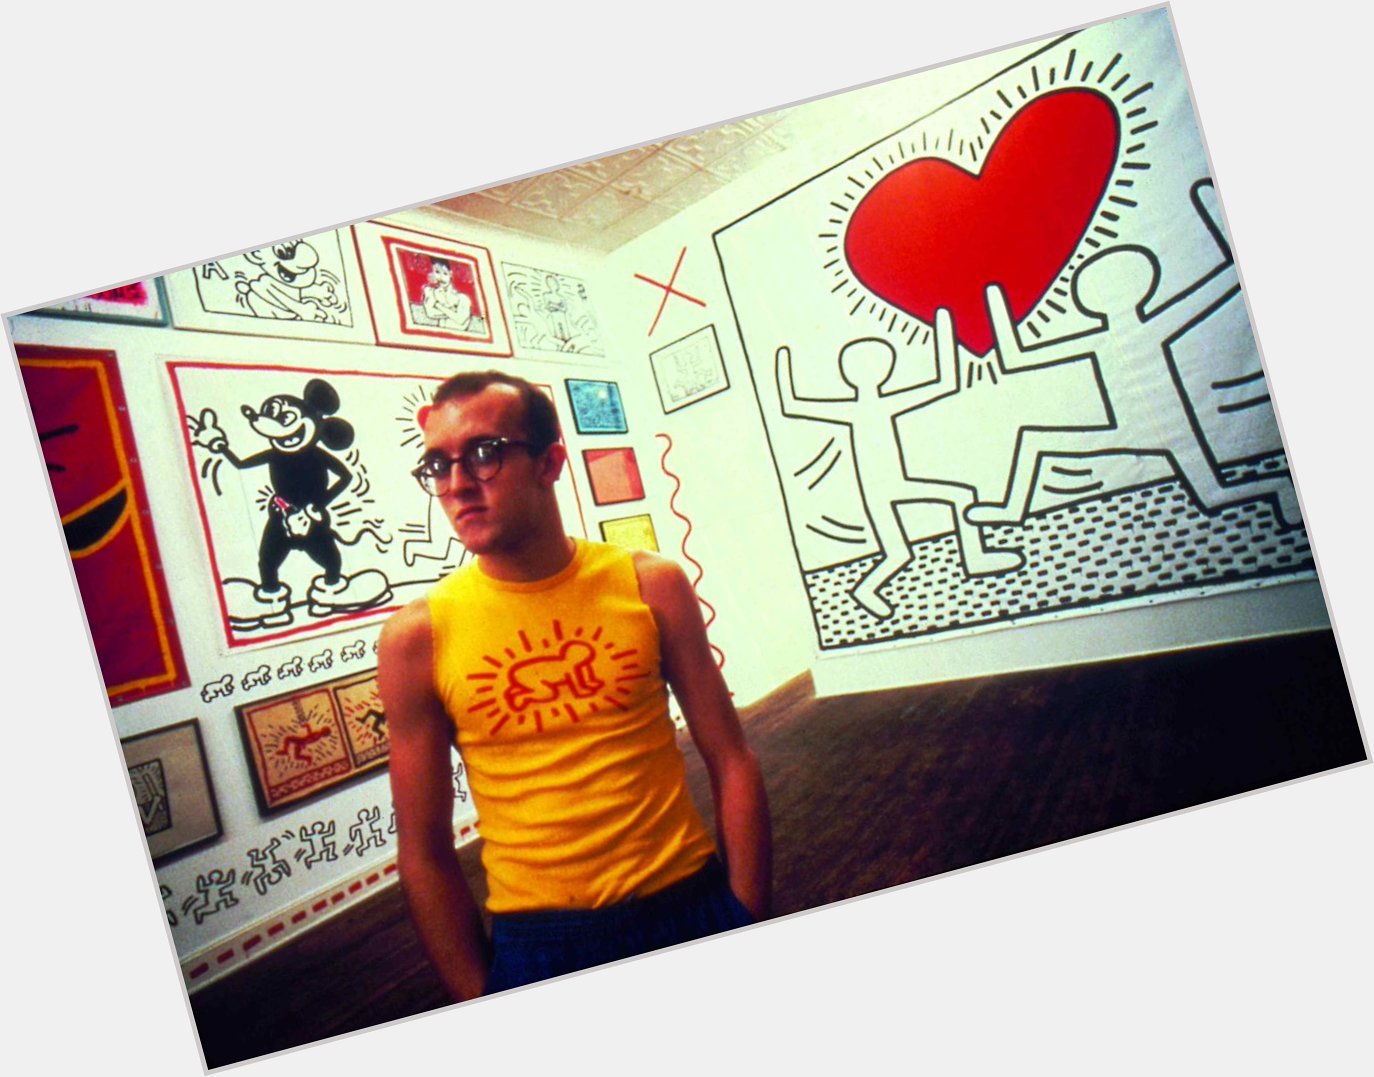 Happy Birthday Keith Haring!!!
born May 4, 1958 